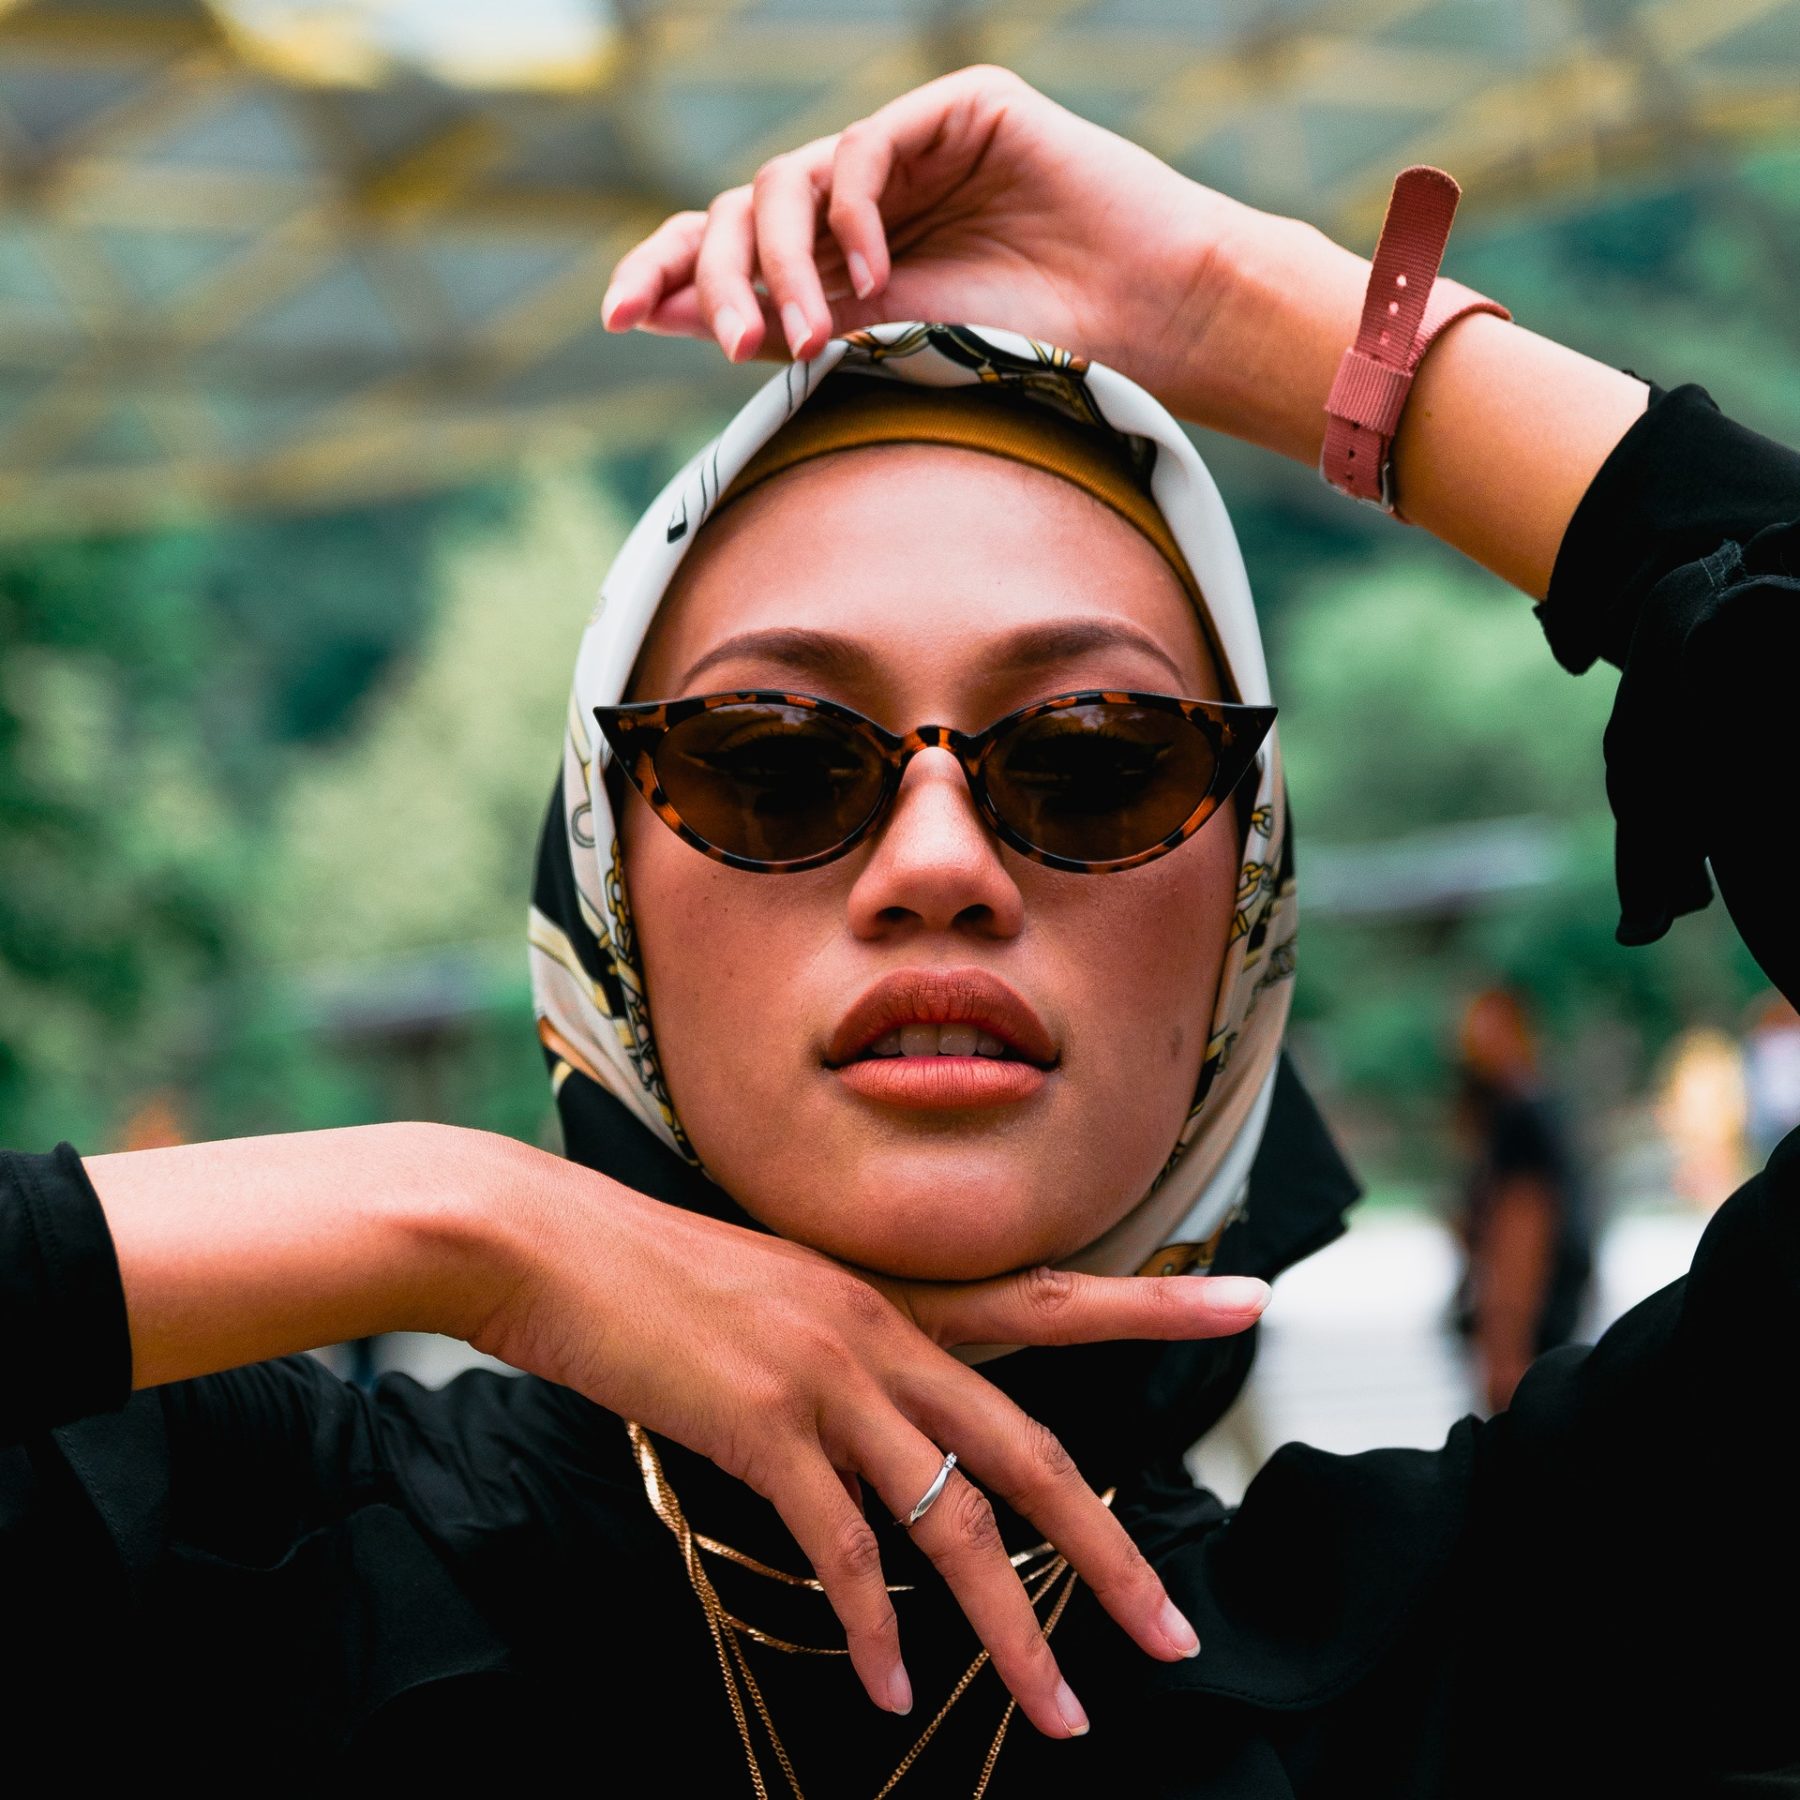 Woman in hijab wearing sunglasses